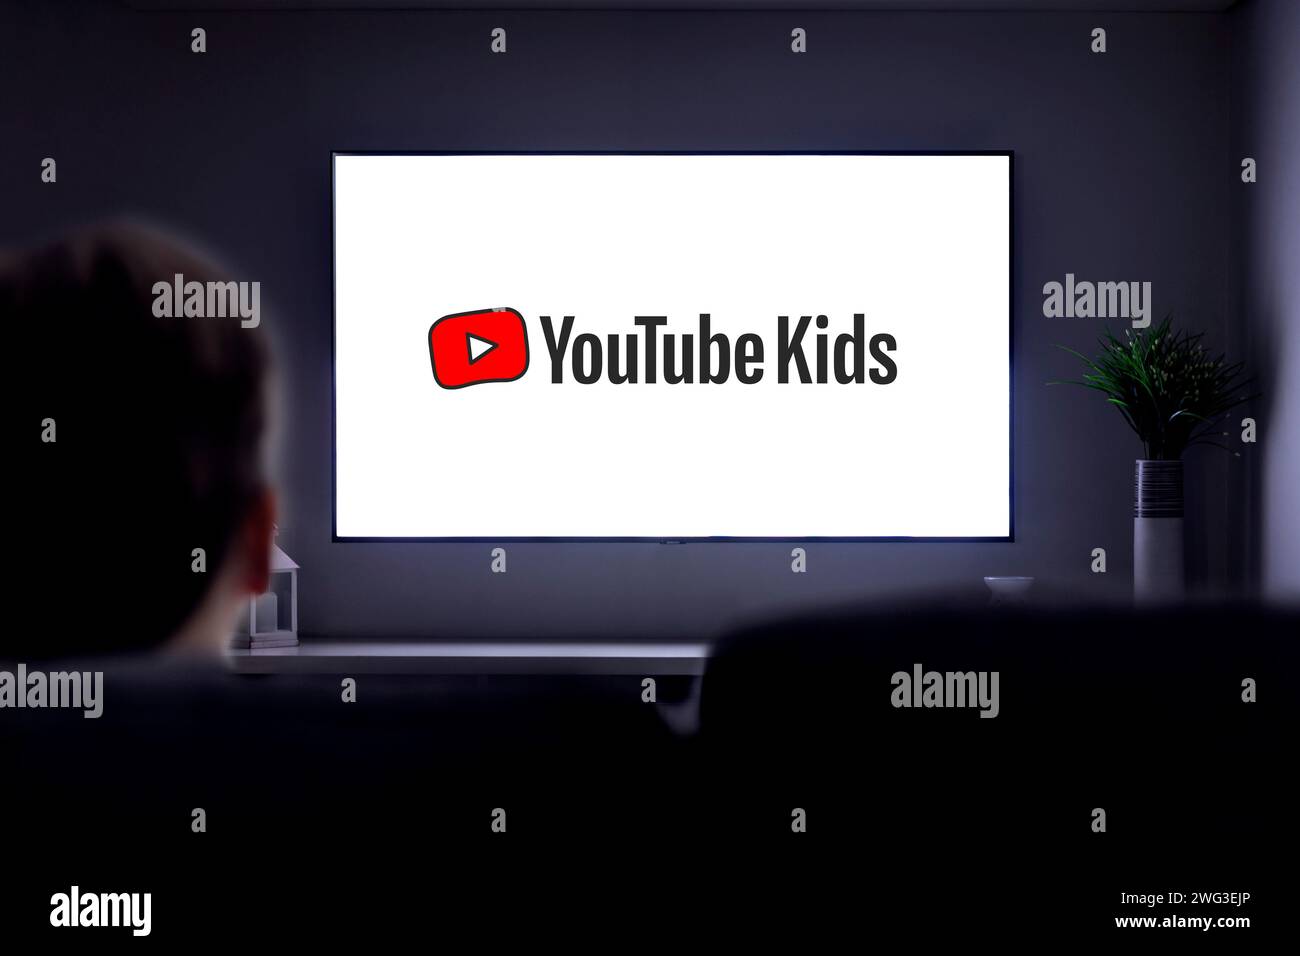 YouTube Kids à la télévision. Un petit garçon seul sur le canapé regardant une télévision intelligente avec le logo You tube Kids sur l'écran. Banque D'Images